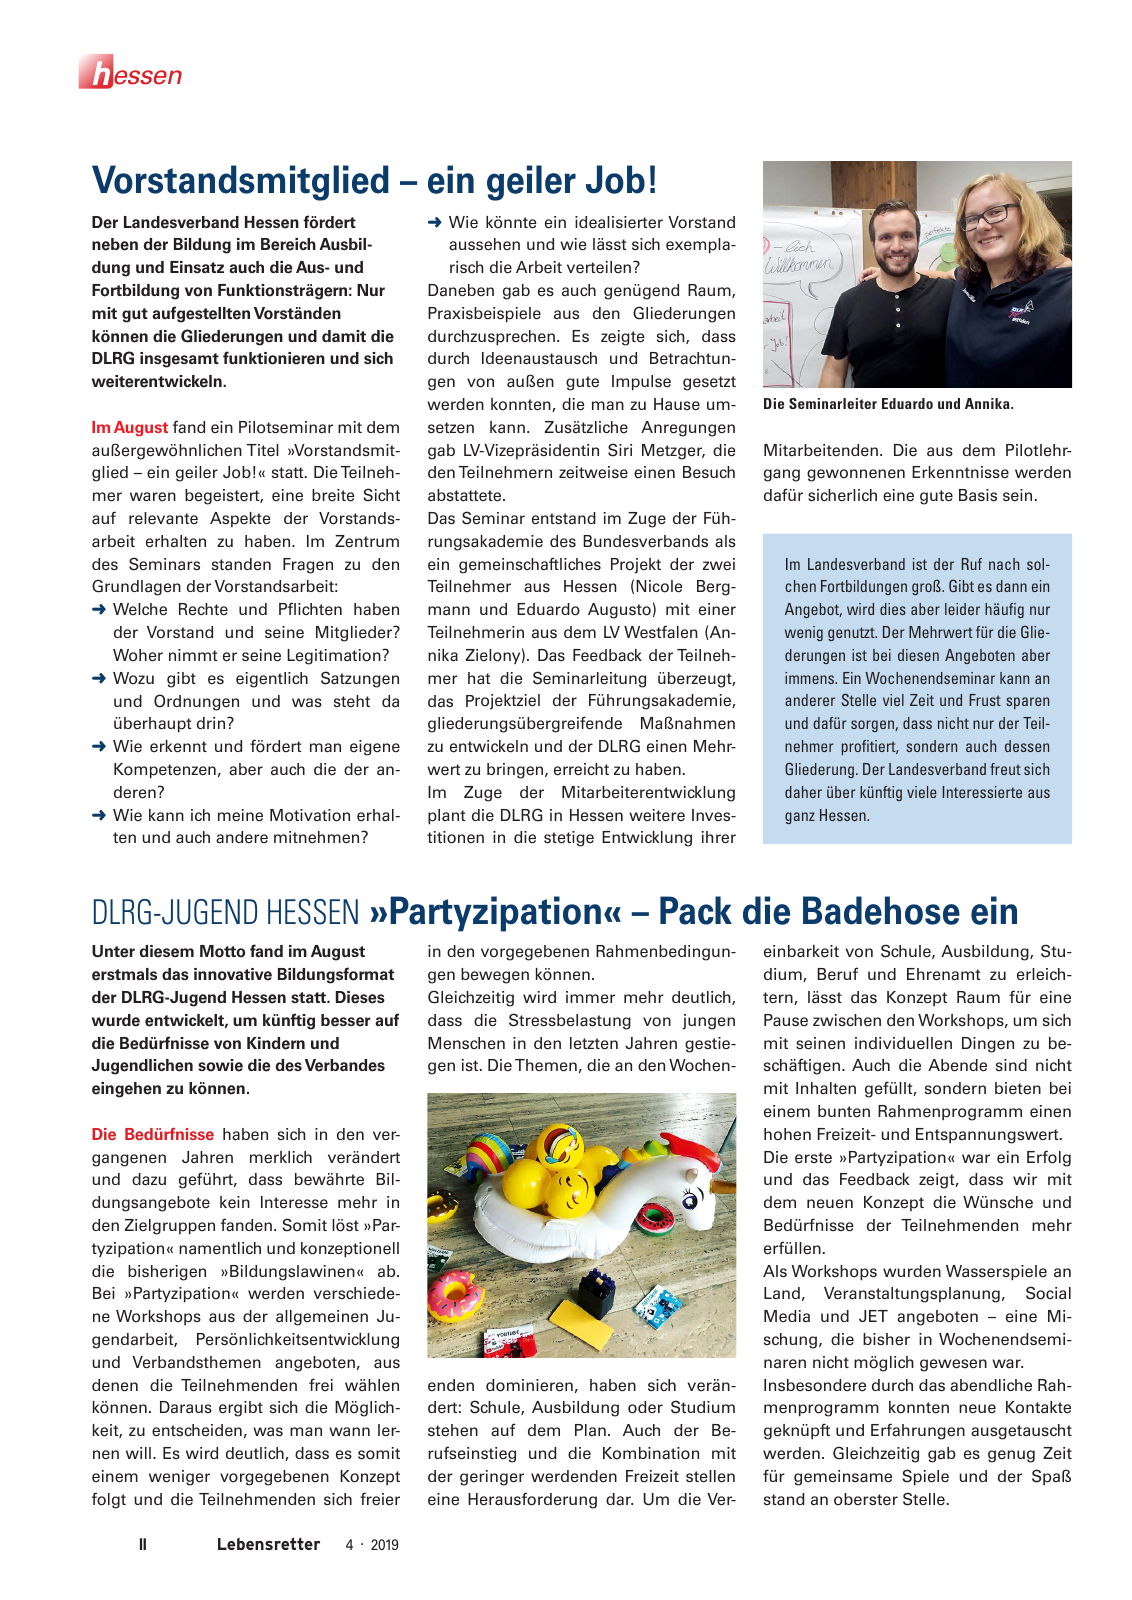 Vorschau Lebensretter 4/2019 -  Hessen Regionalausgabe Seite 4